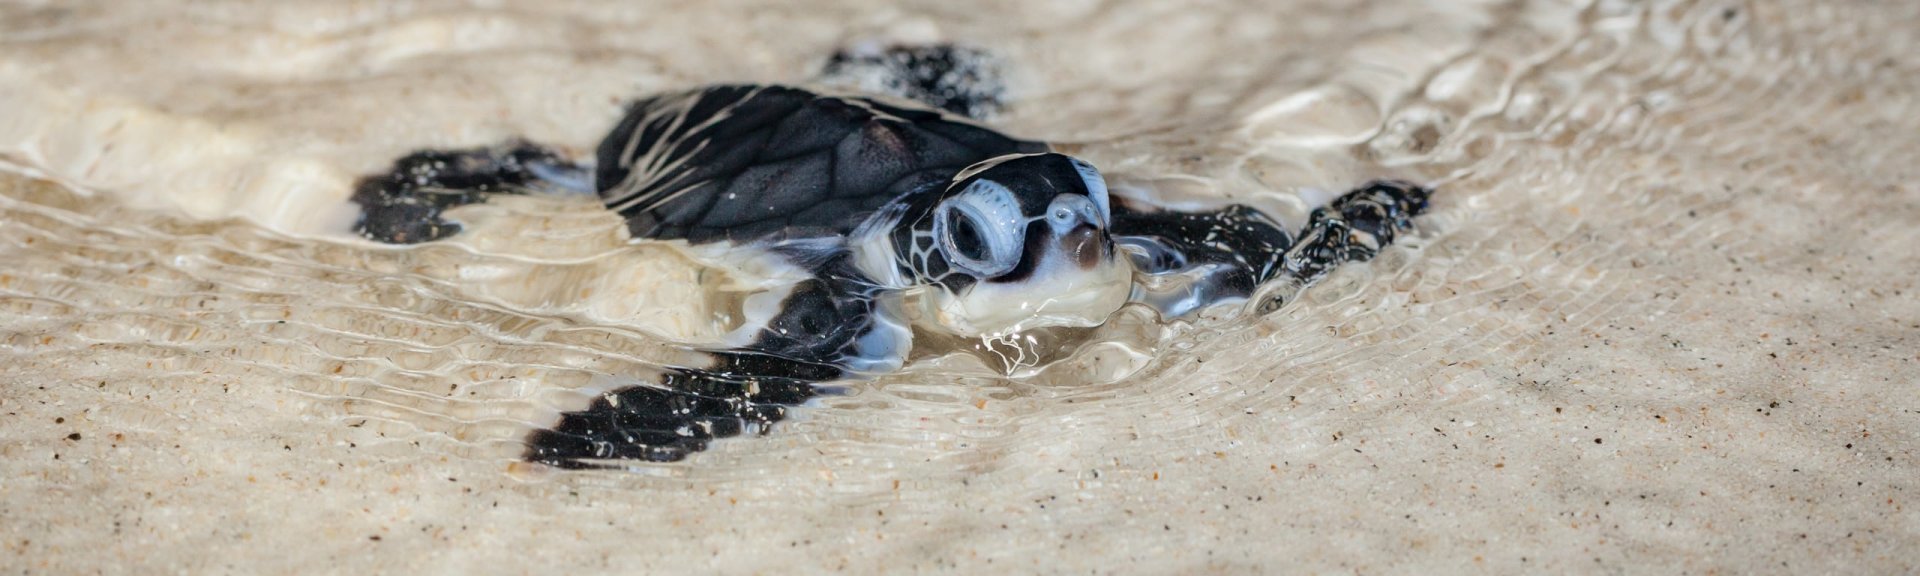 Newly hatched baby turtle. Photo: [Wondrous World Images](https://www.wondrousworldimages.com.au)